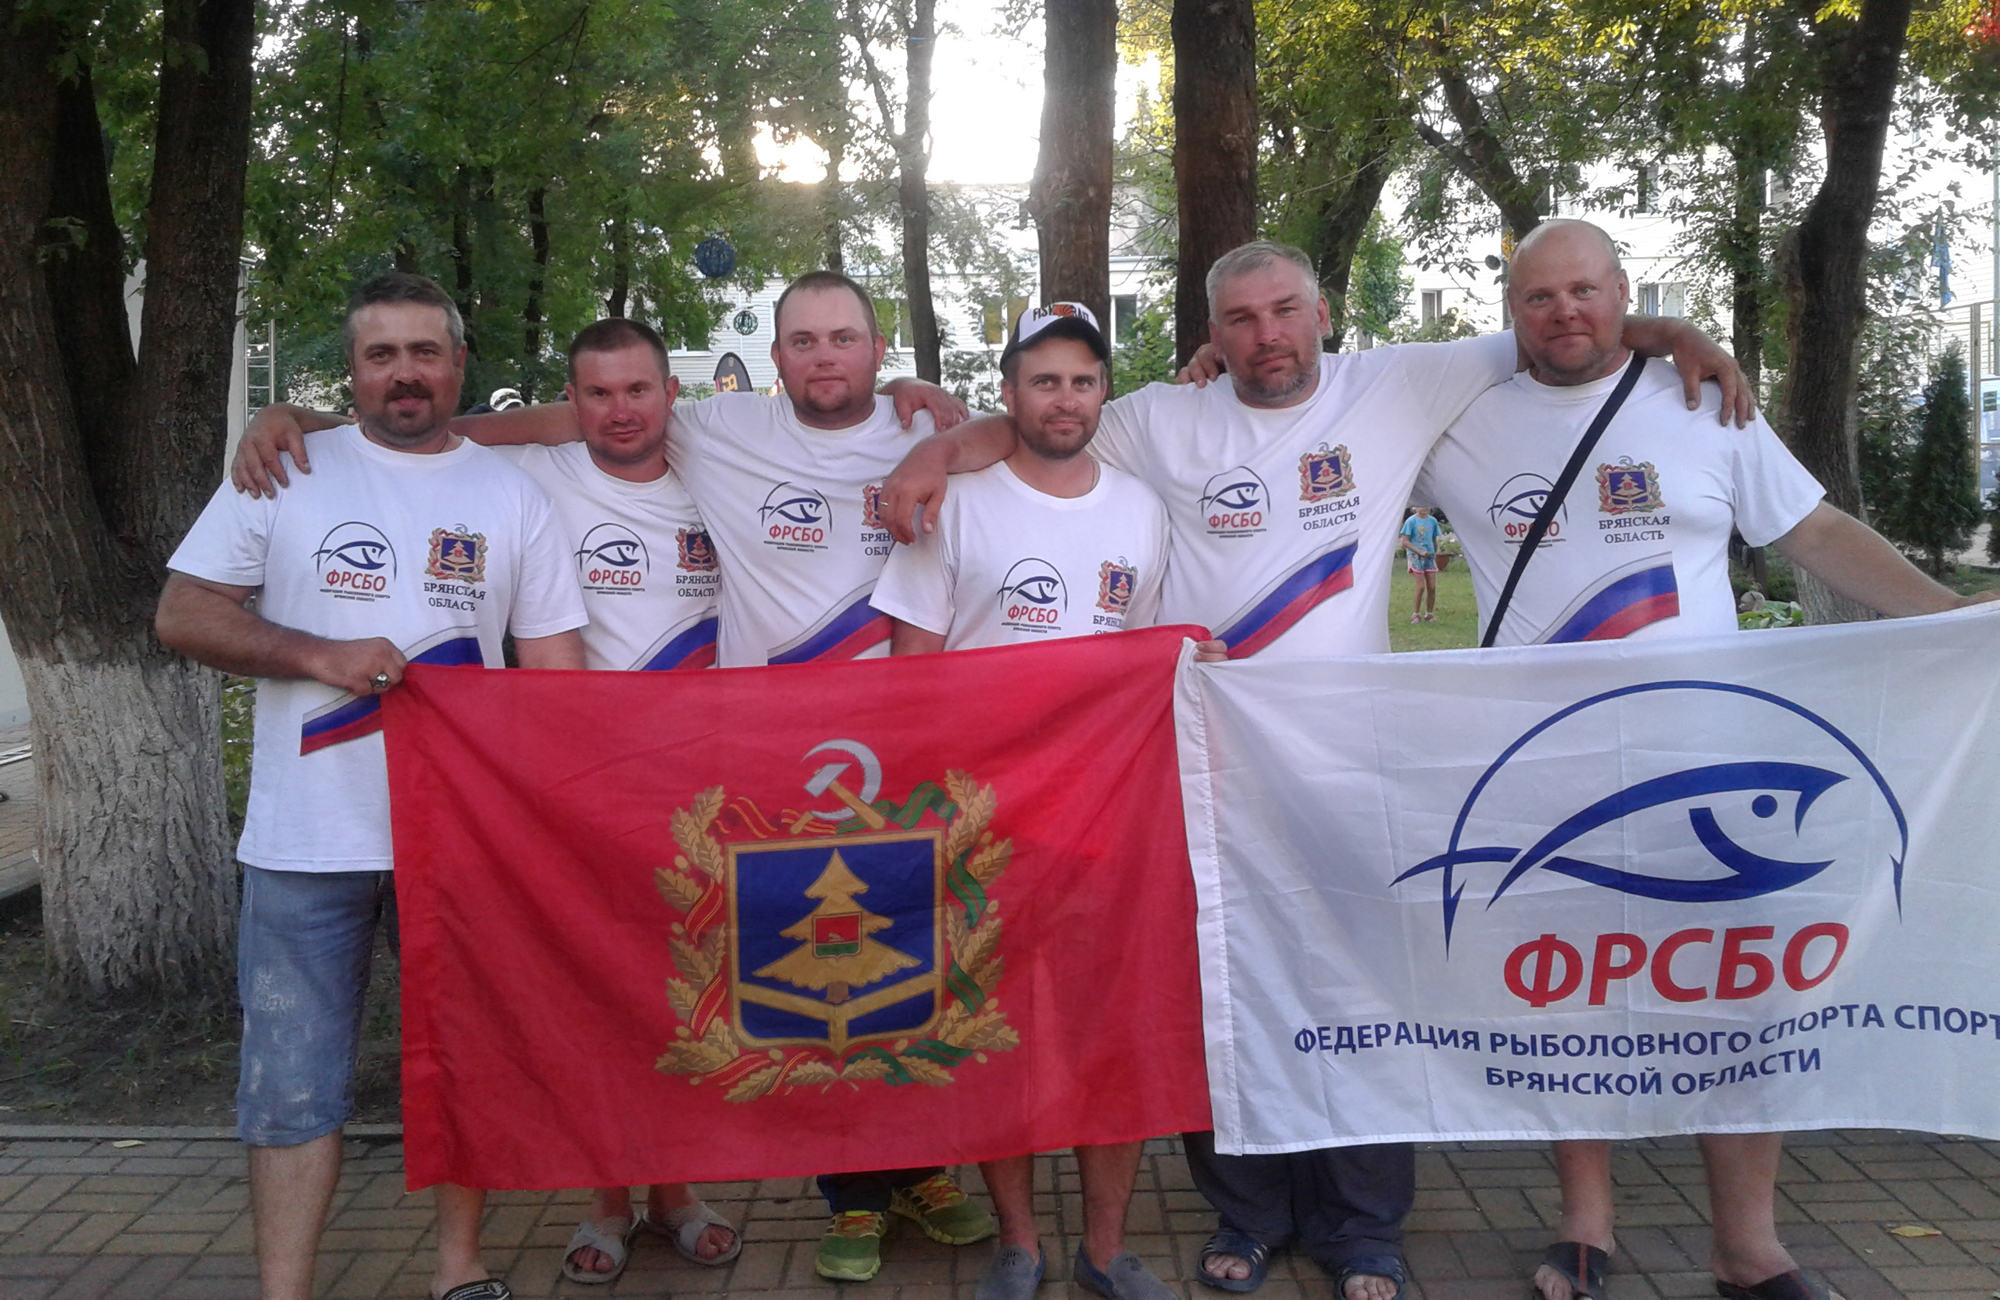 Команда Брянской области остановилась в шаге от медалей на чемпионате России по рыбной ловле